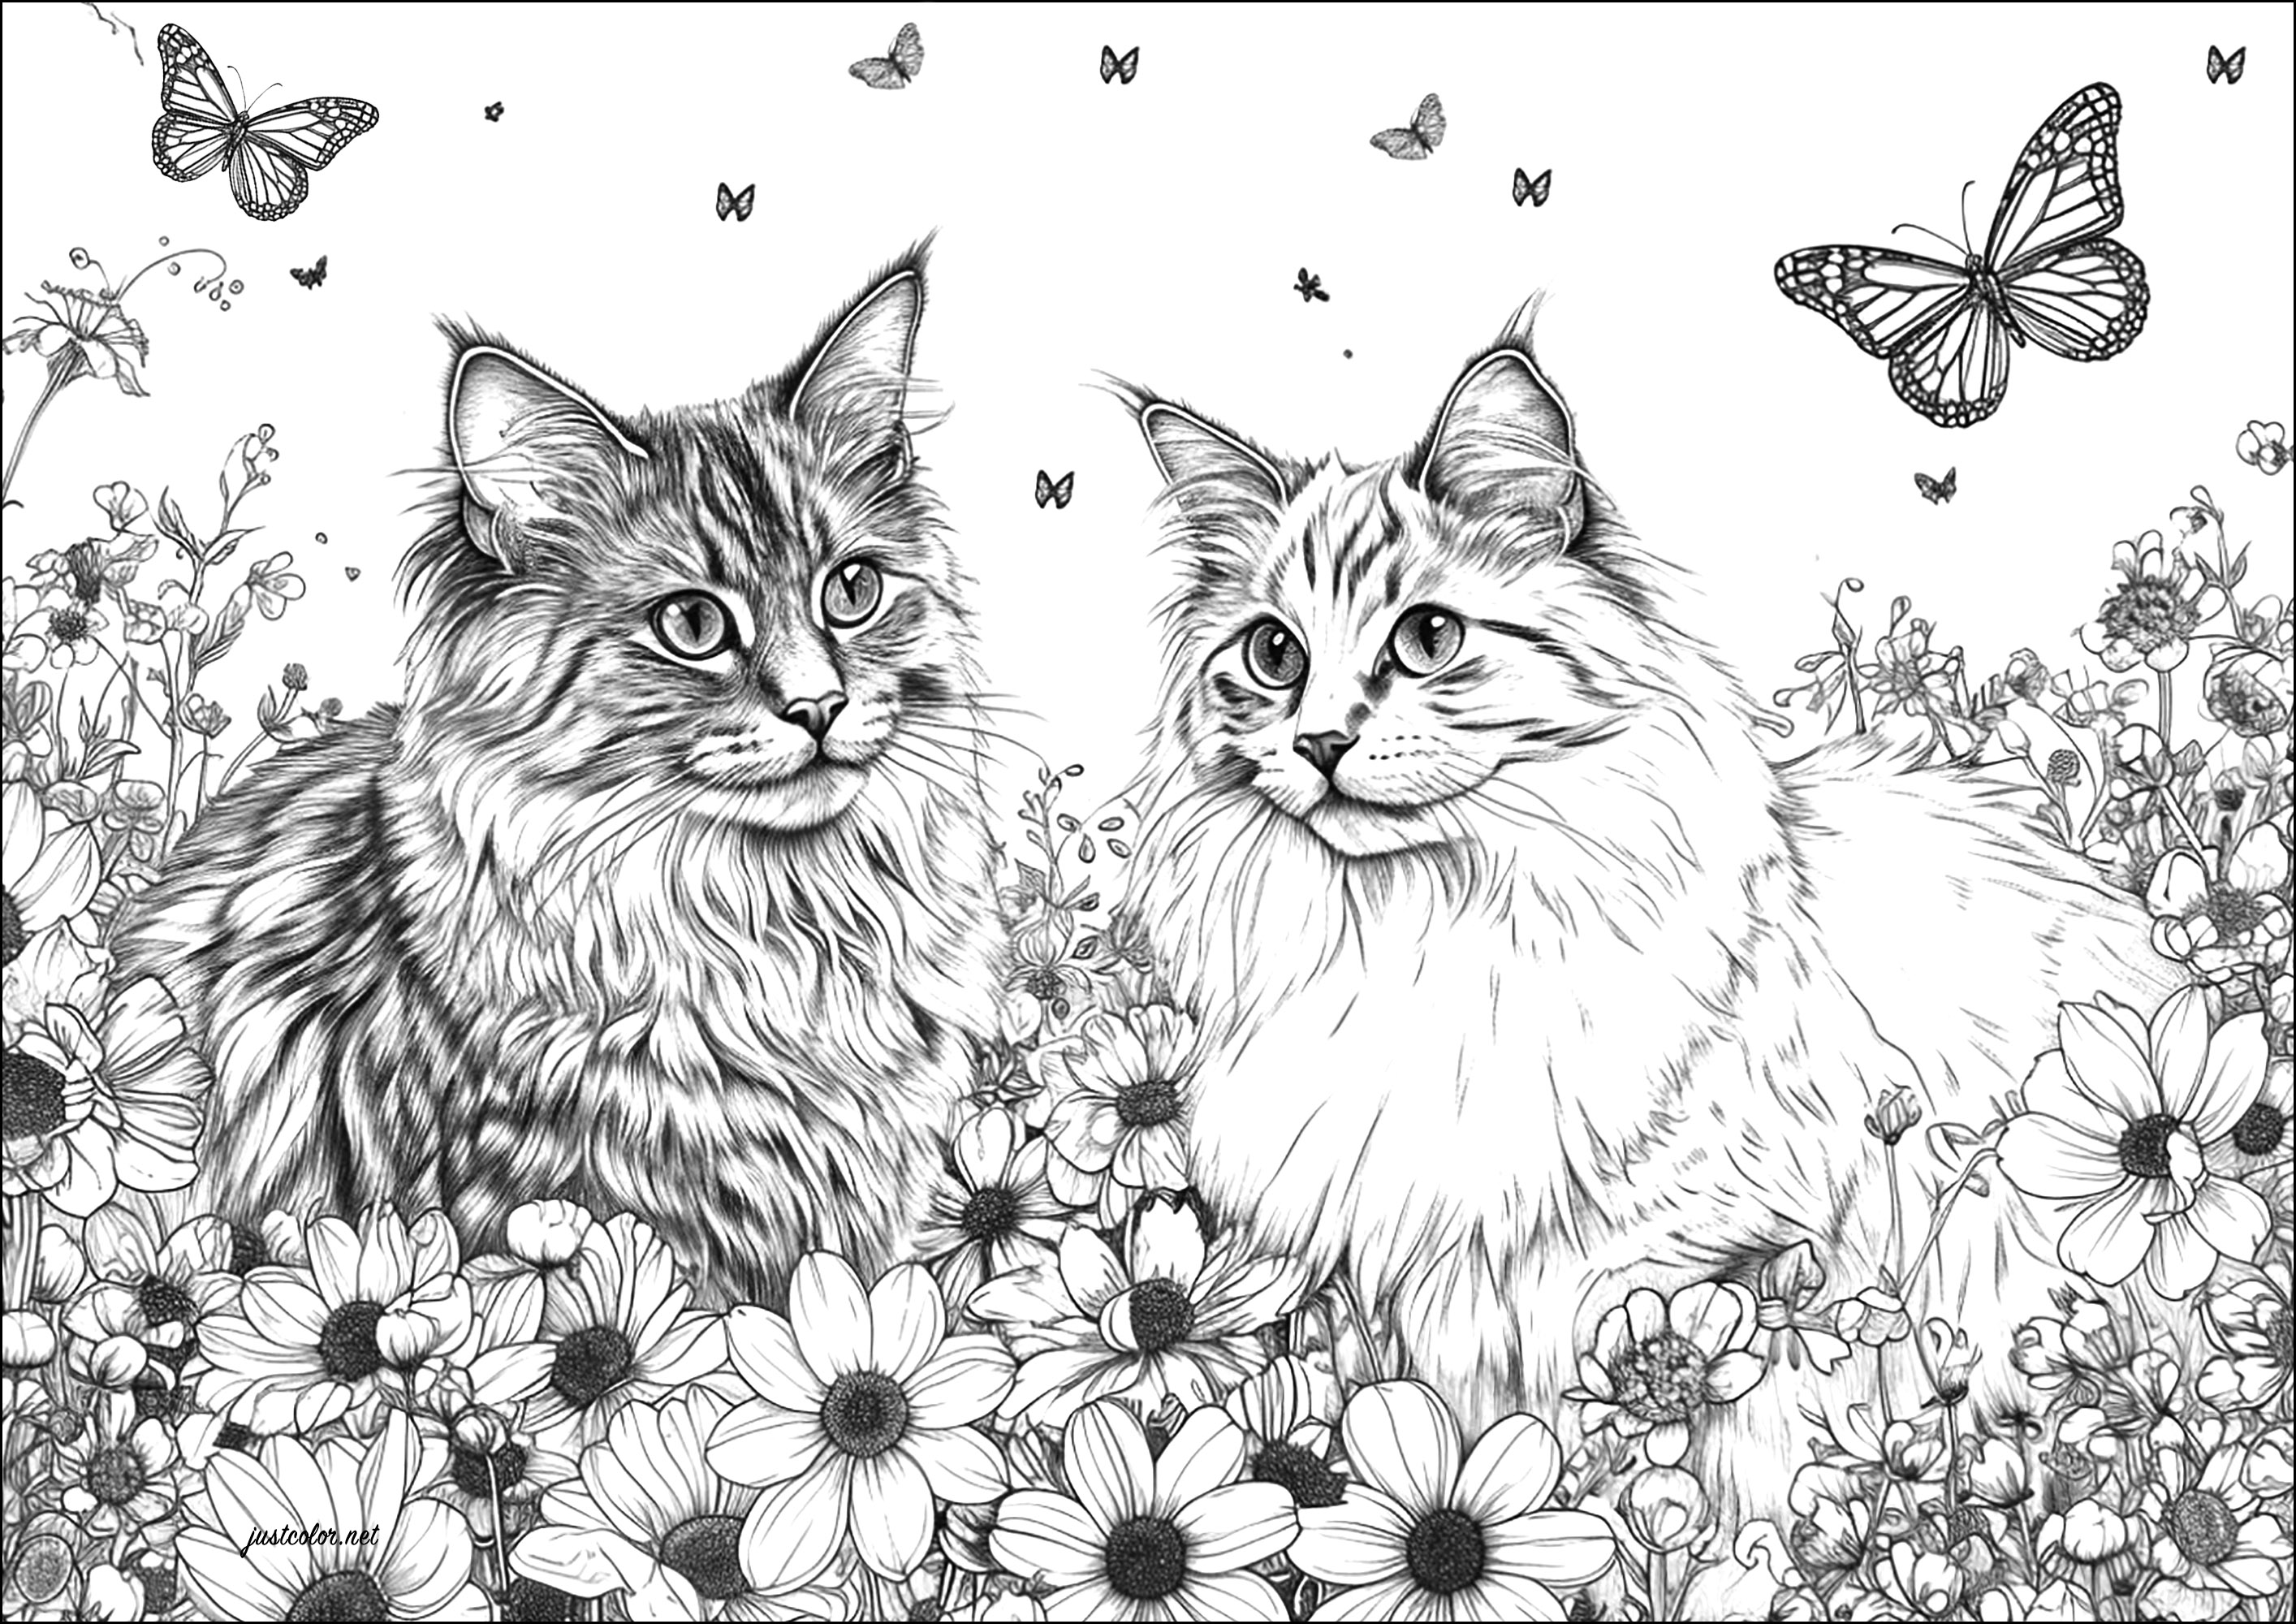 Deux chats tres réalistes avec fleurs et papillons. Un dessin très réaliste, qui demandera des heures de travail